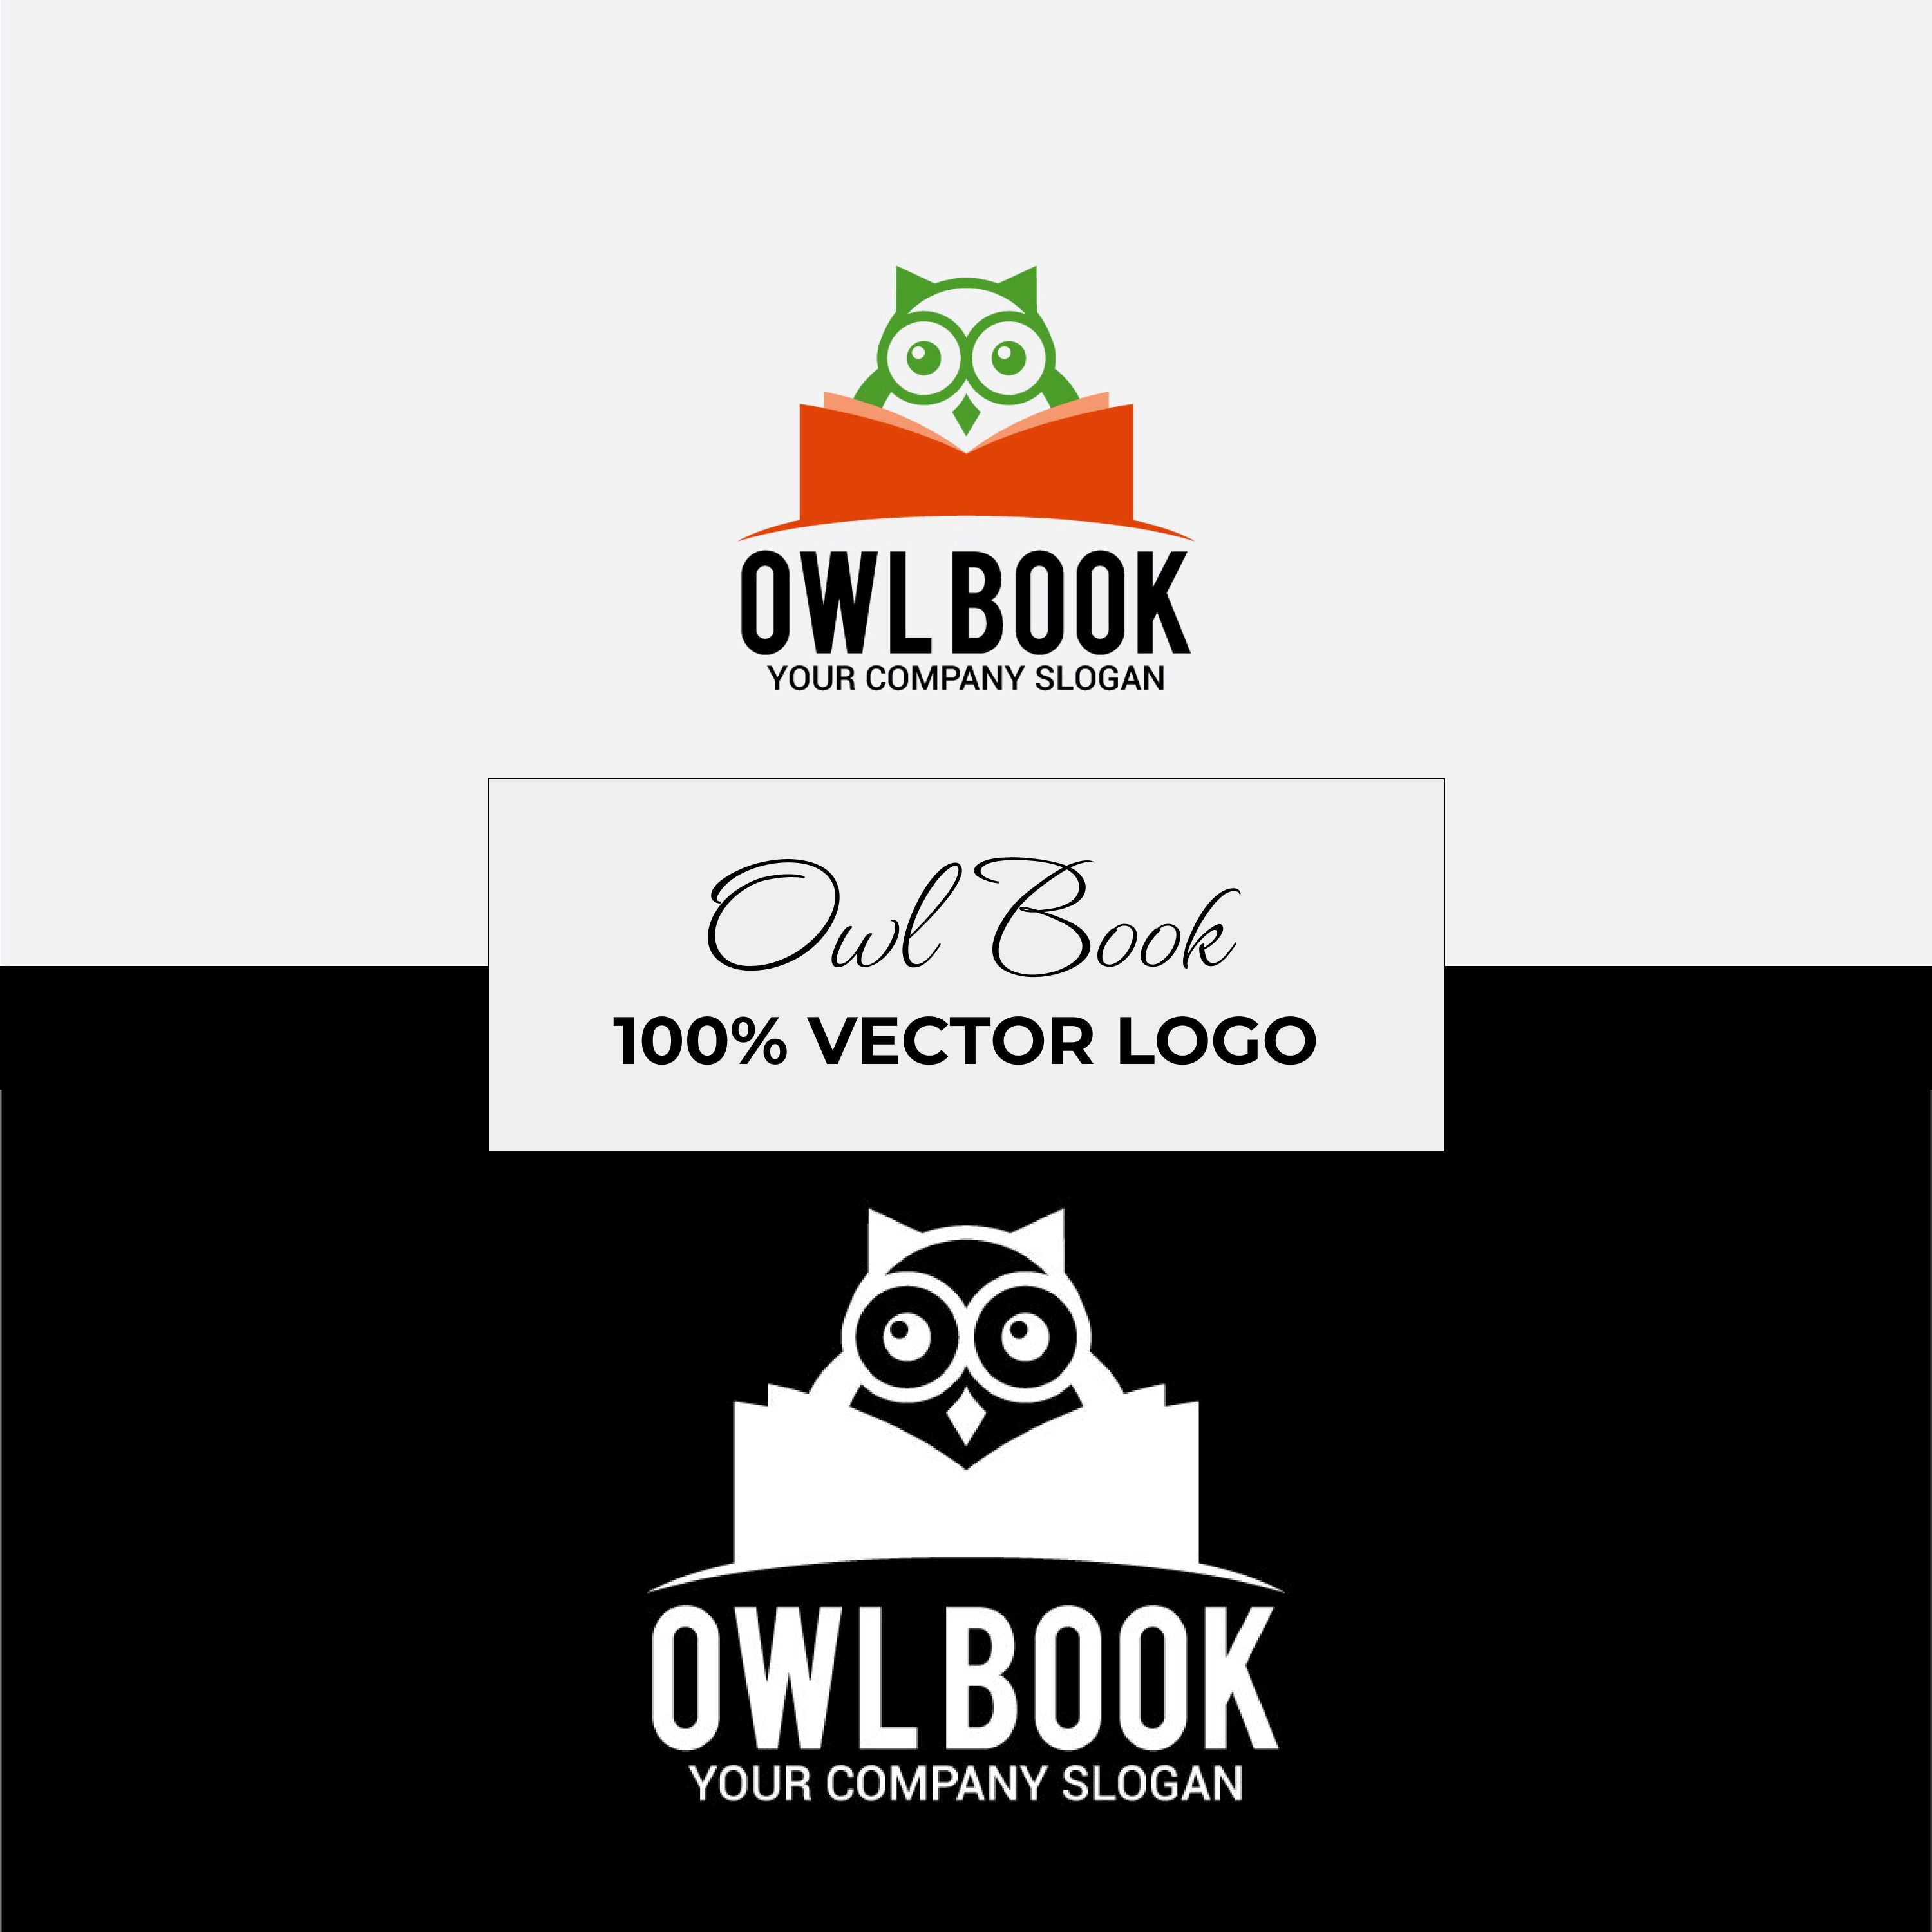 Preview owl book logo.